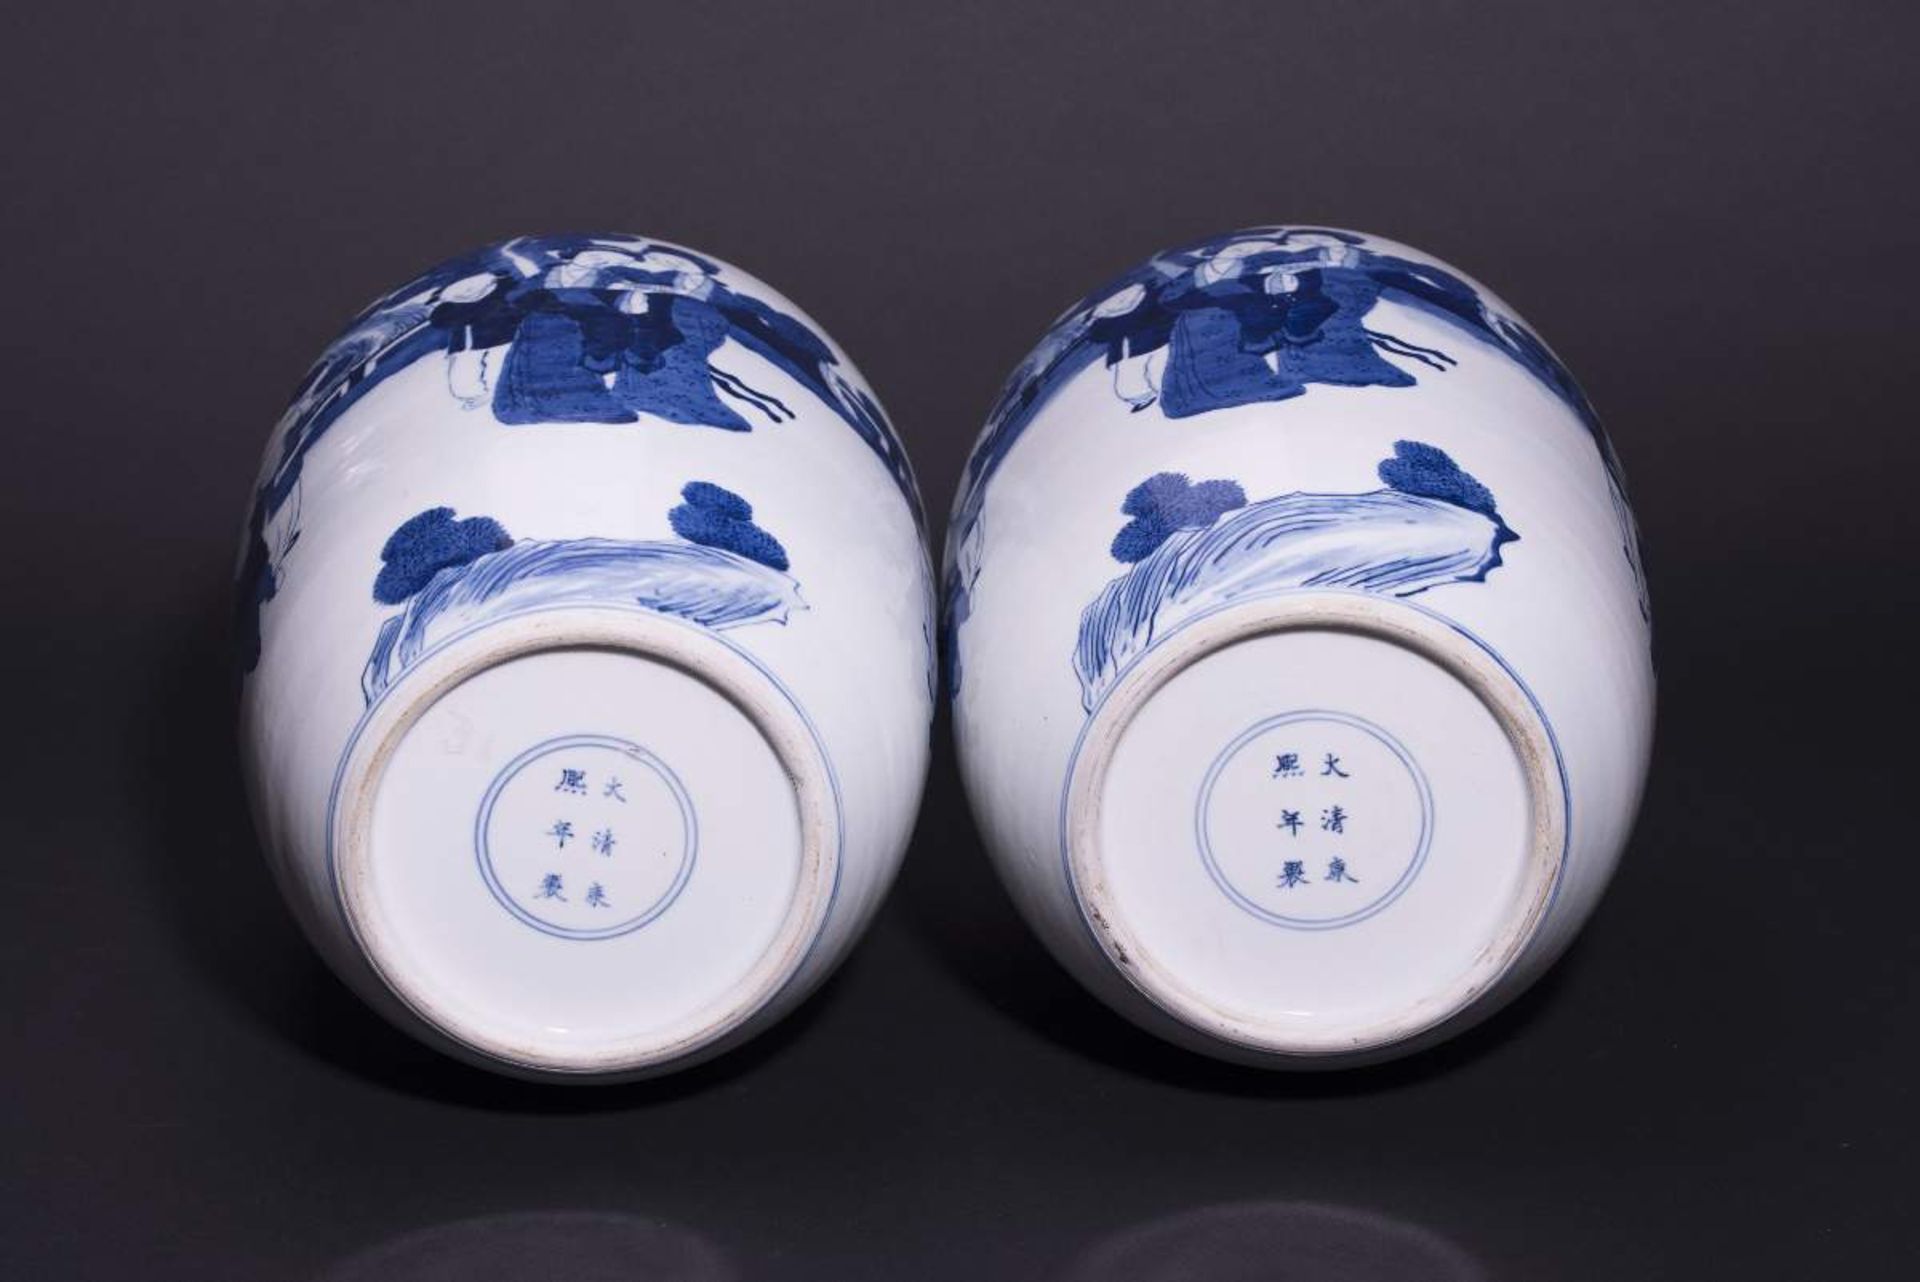 PAAR DECKELVASEN MIT GARTENSZENENBlauweißes Porzellan. China, Qing-Dynastie, 19. Jh.Mit Bodenmarke - Image 5 of 6